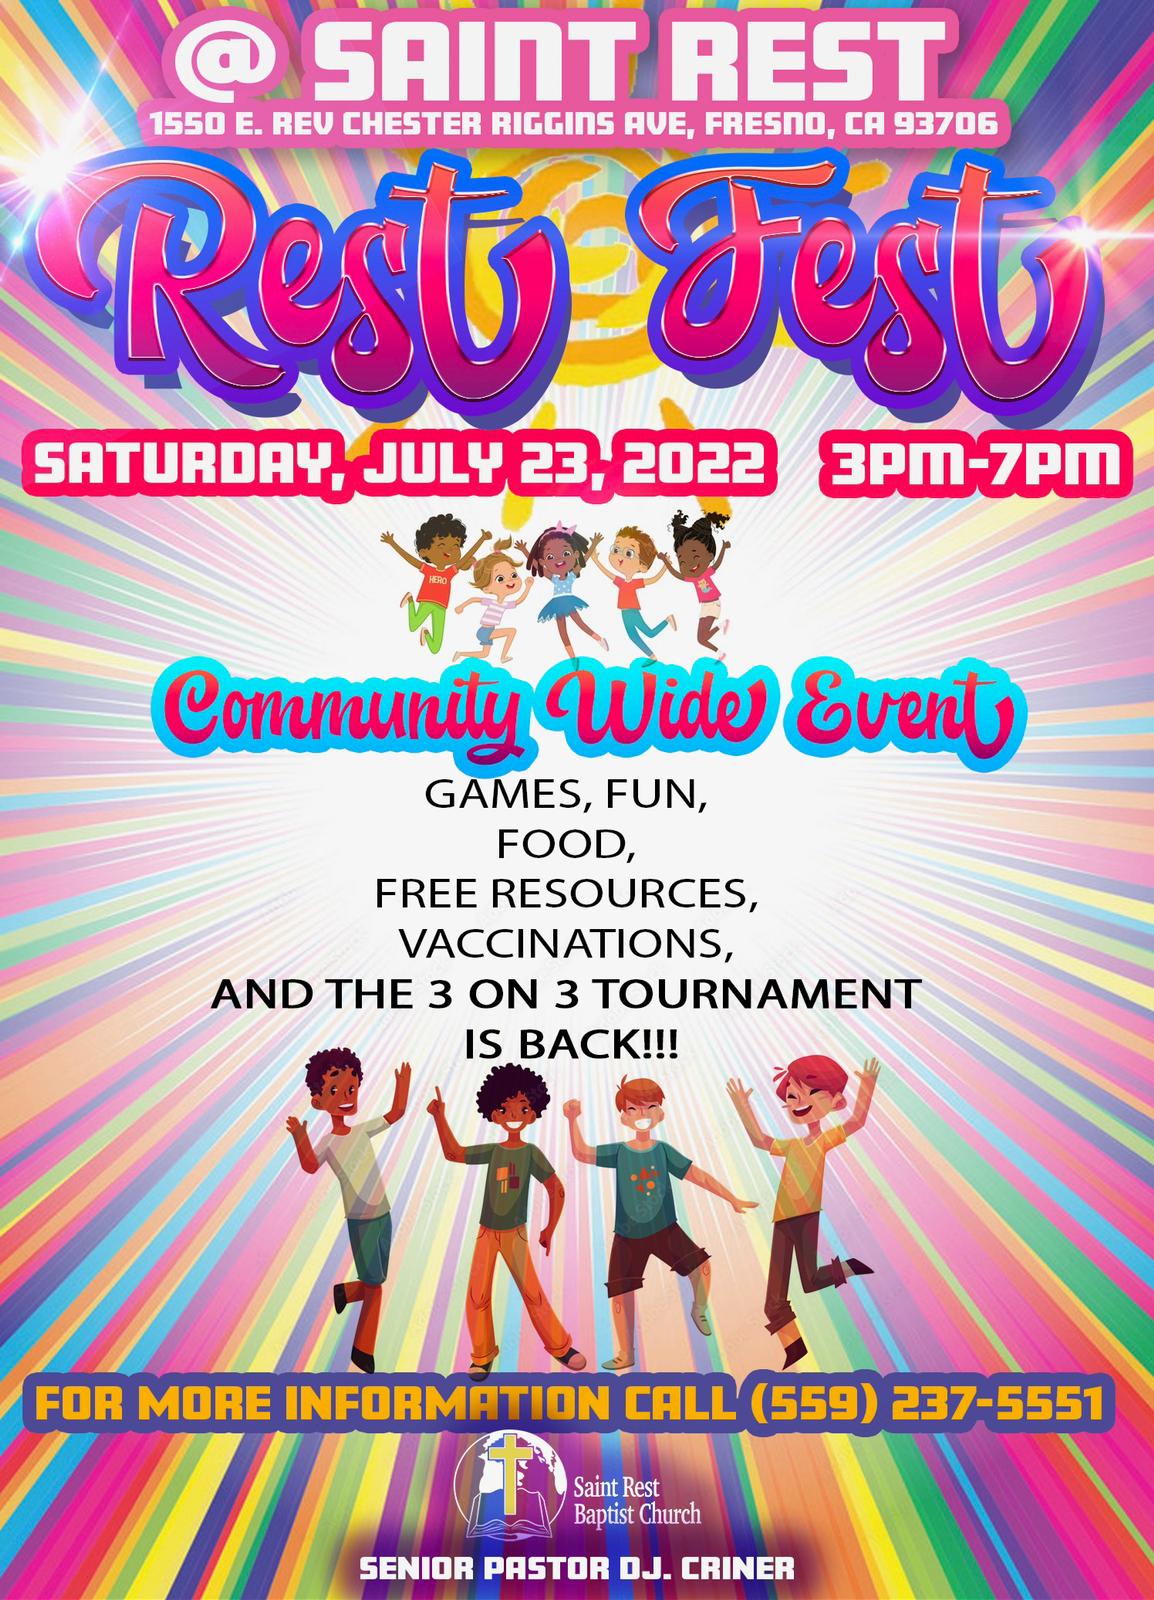 rest fest block party event flyer